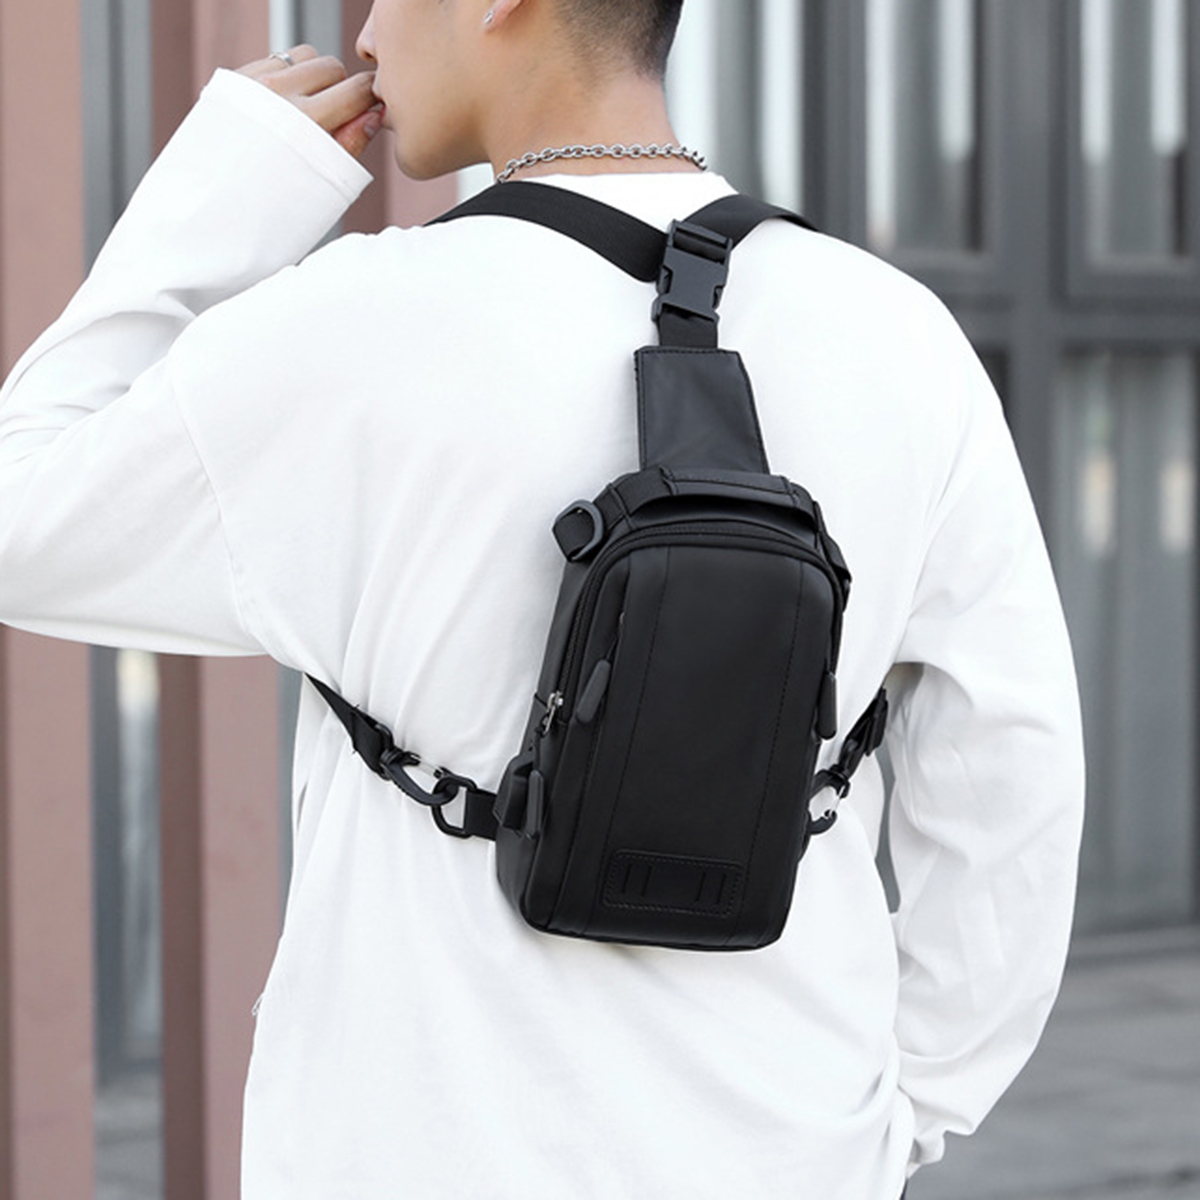 Multifunctional-Mens-Shoulder-Bag-with-USB-Charging-Port-Macbook-Storage-Messenger-Bag-Chest-Bag-Mob-1811822-26